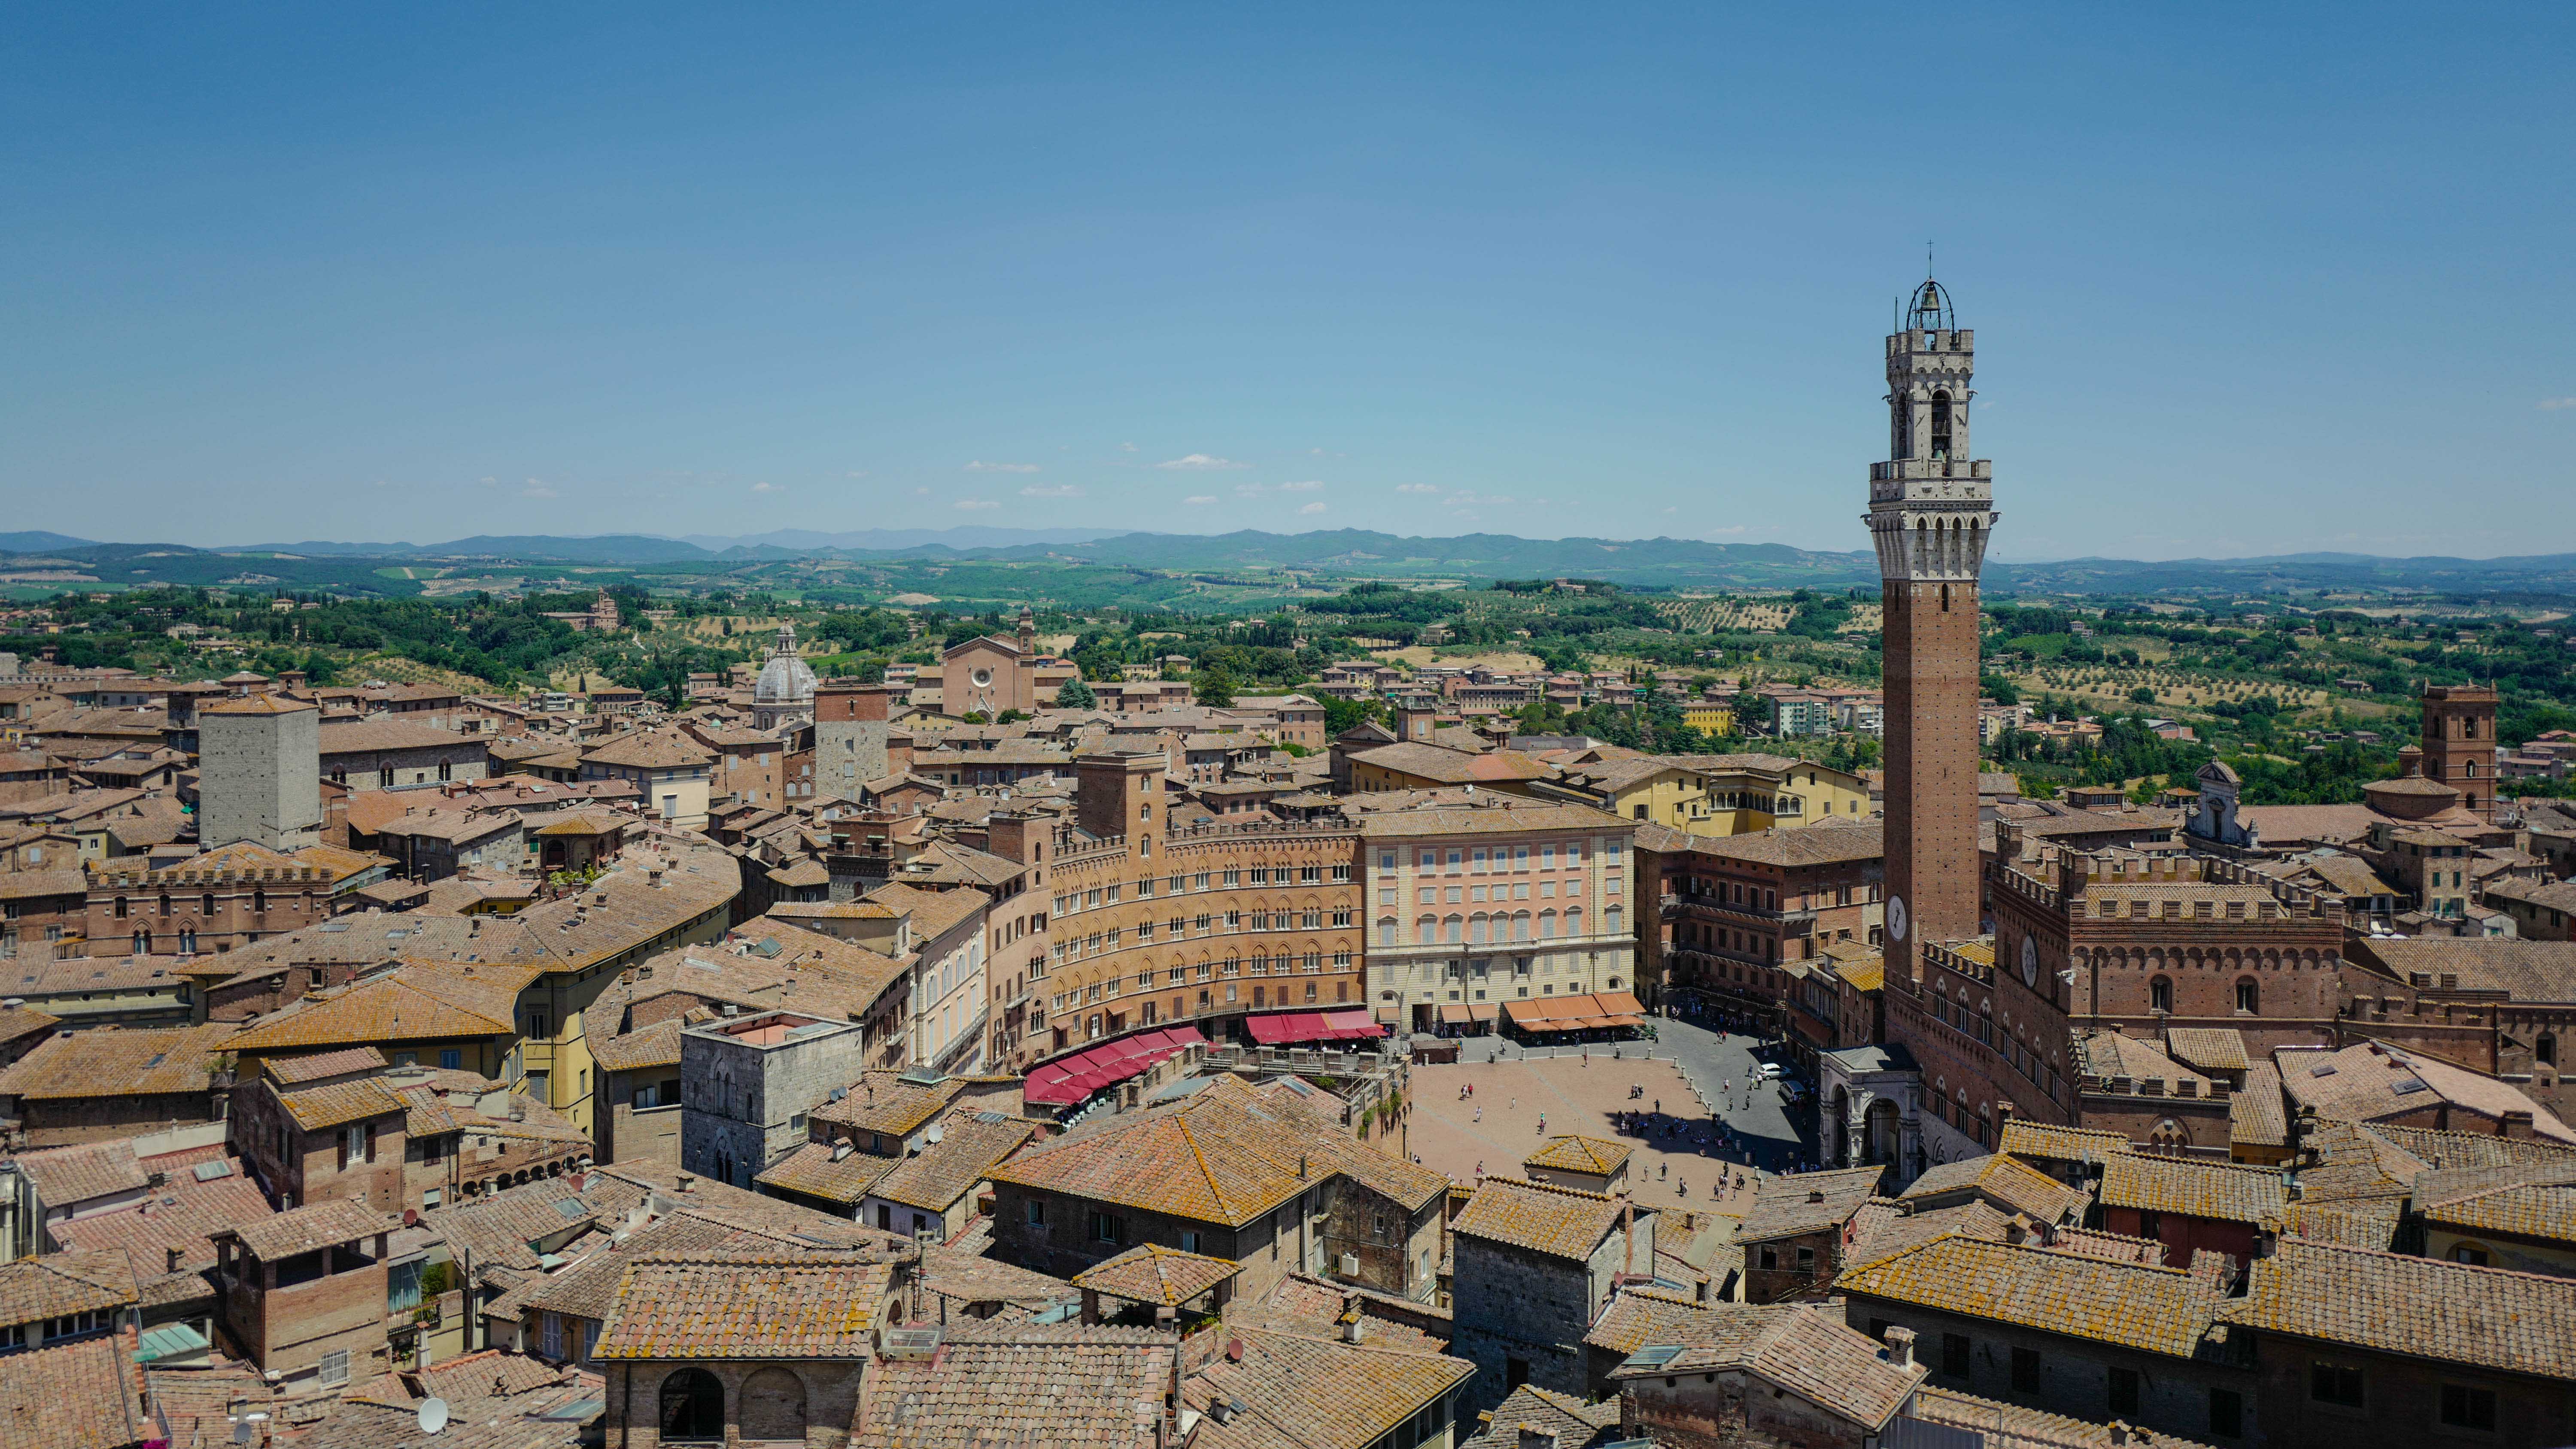 Auf dem Bild sieht man die Innenstadt von Siena von weiter oben aufgenommen